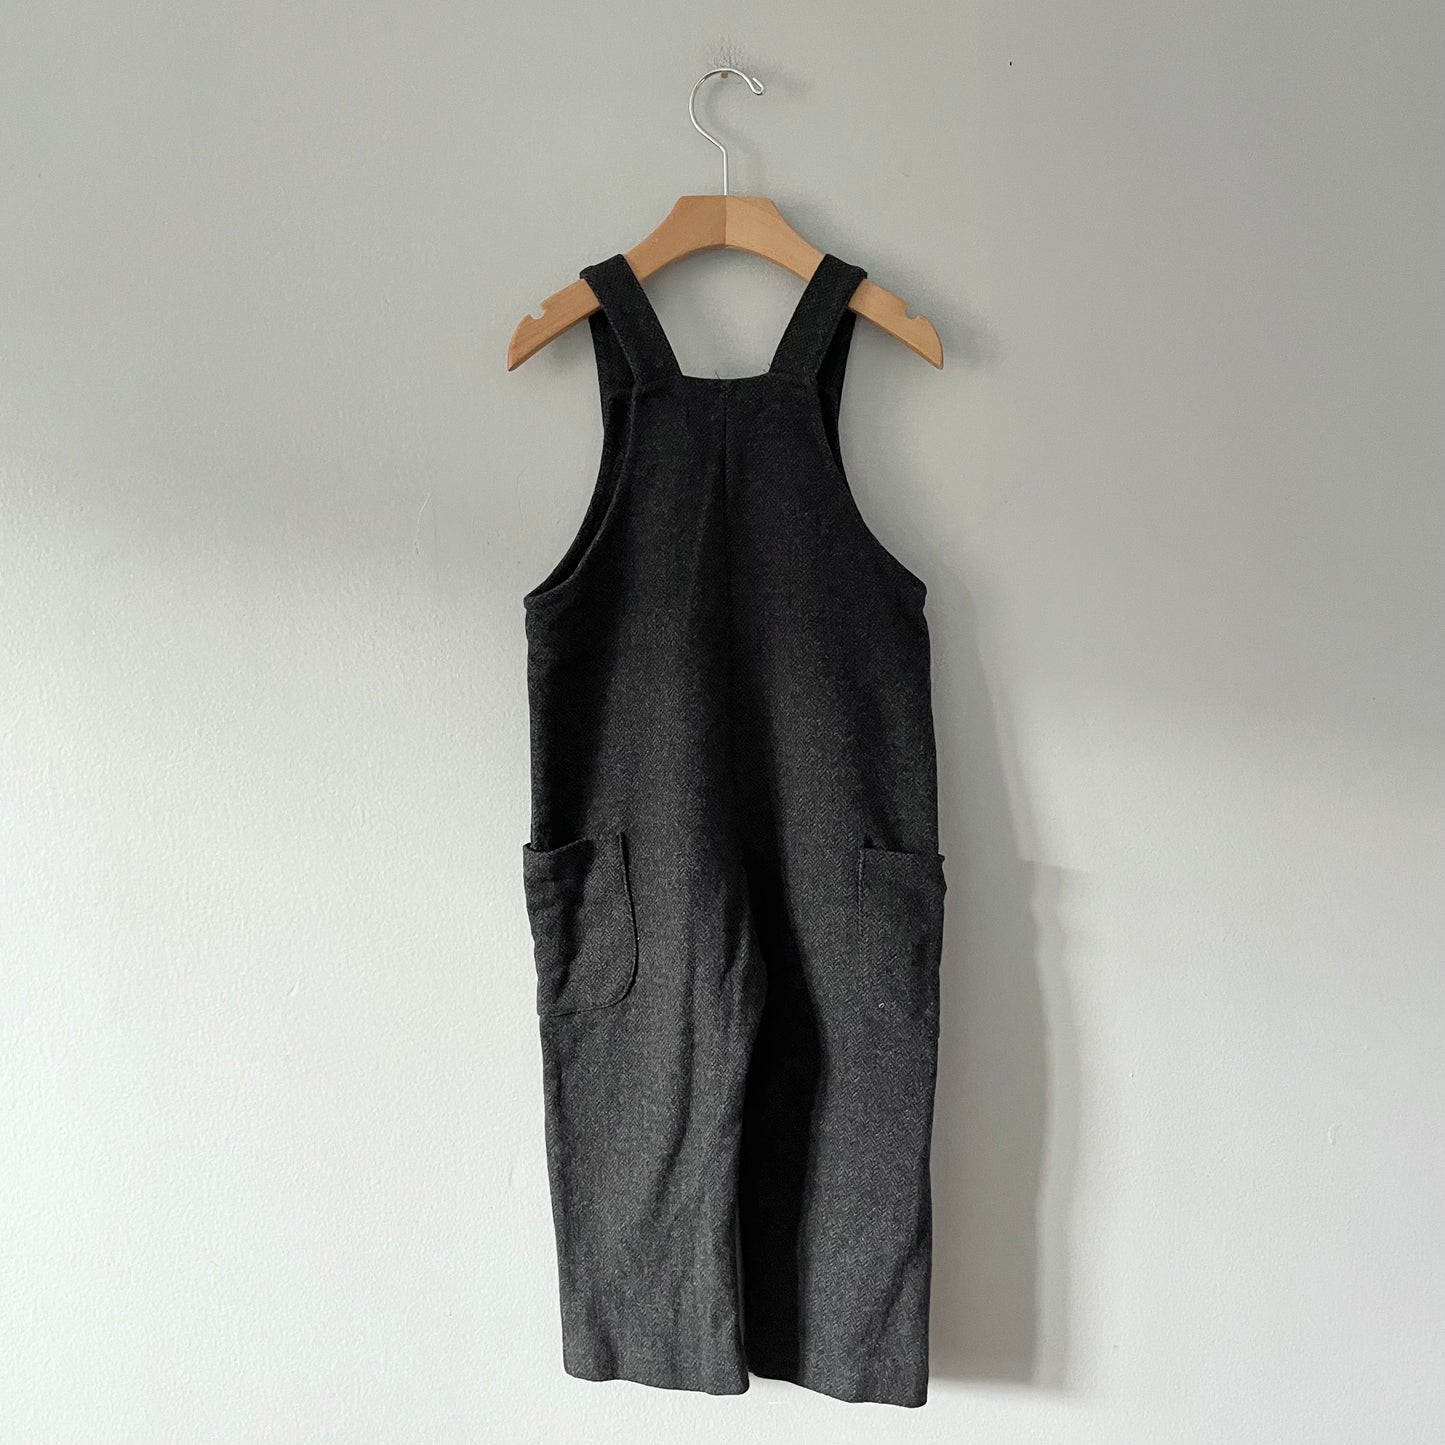 Zara / Tweed overalls / 4-5Y